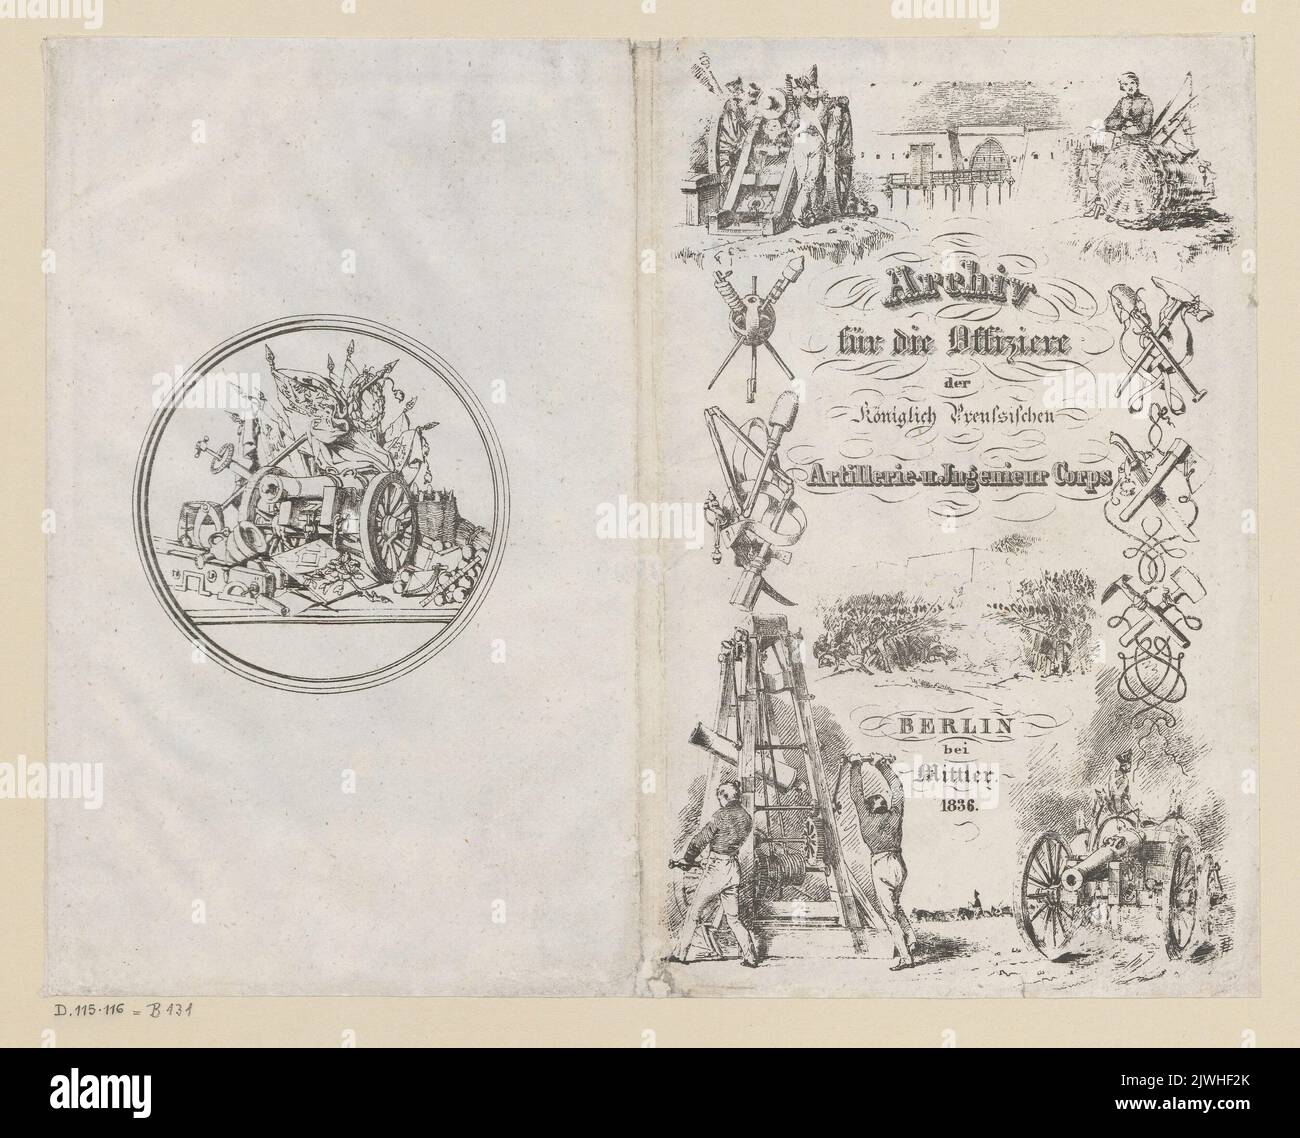 Obwoluta do 'Archiv für die Offiziere der Königlich Preussischen Artillerie-und Ingenieur-Corps'. Menzel, Adolph (1815-1905), graphic artist Stock Photo